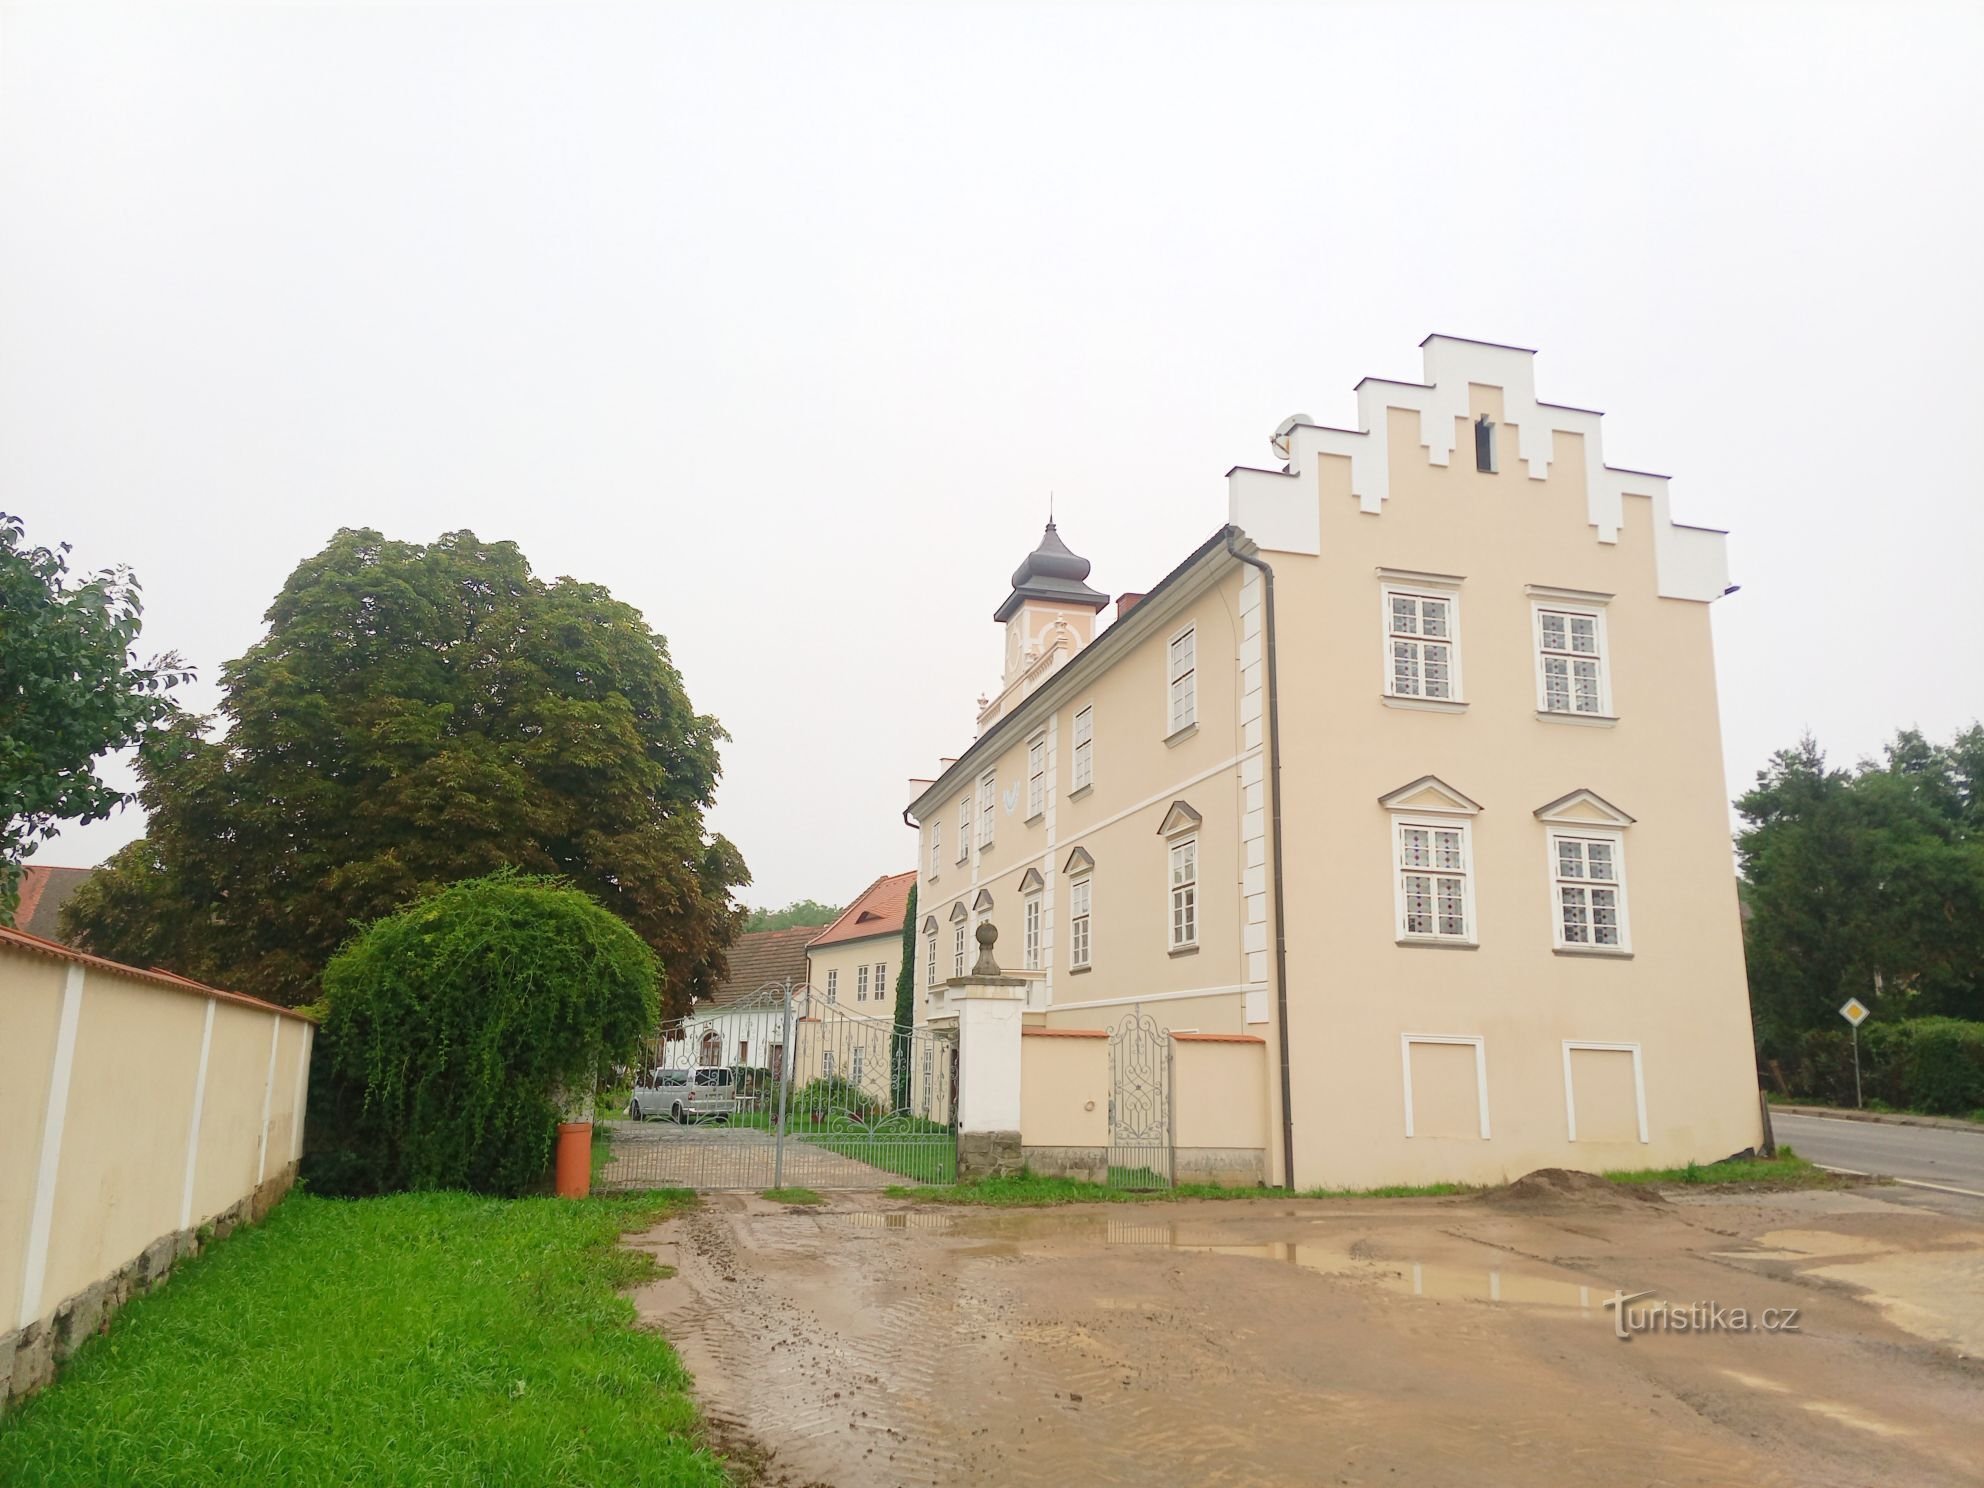 1. Renässansslott i Kňovice från början av 17-talet. En rektangulär tvåvåningsbyggnad med tr